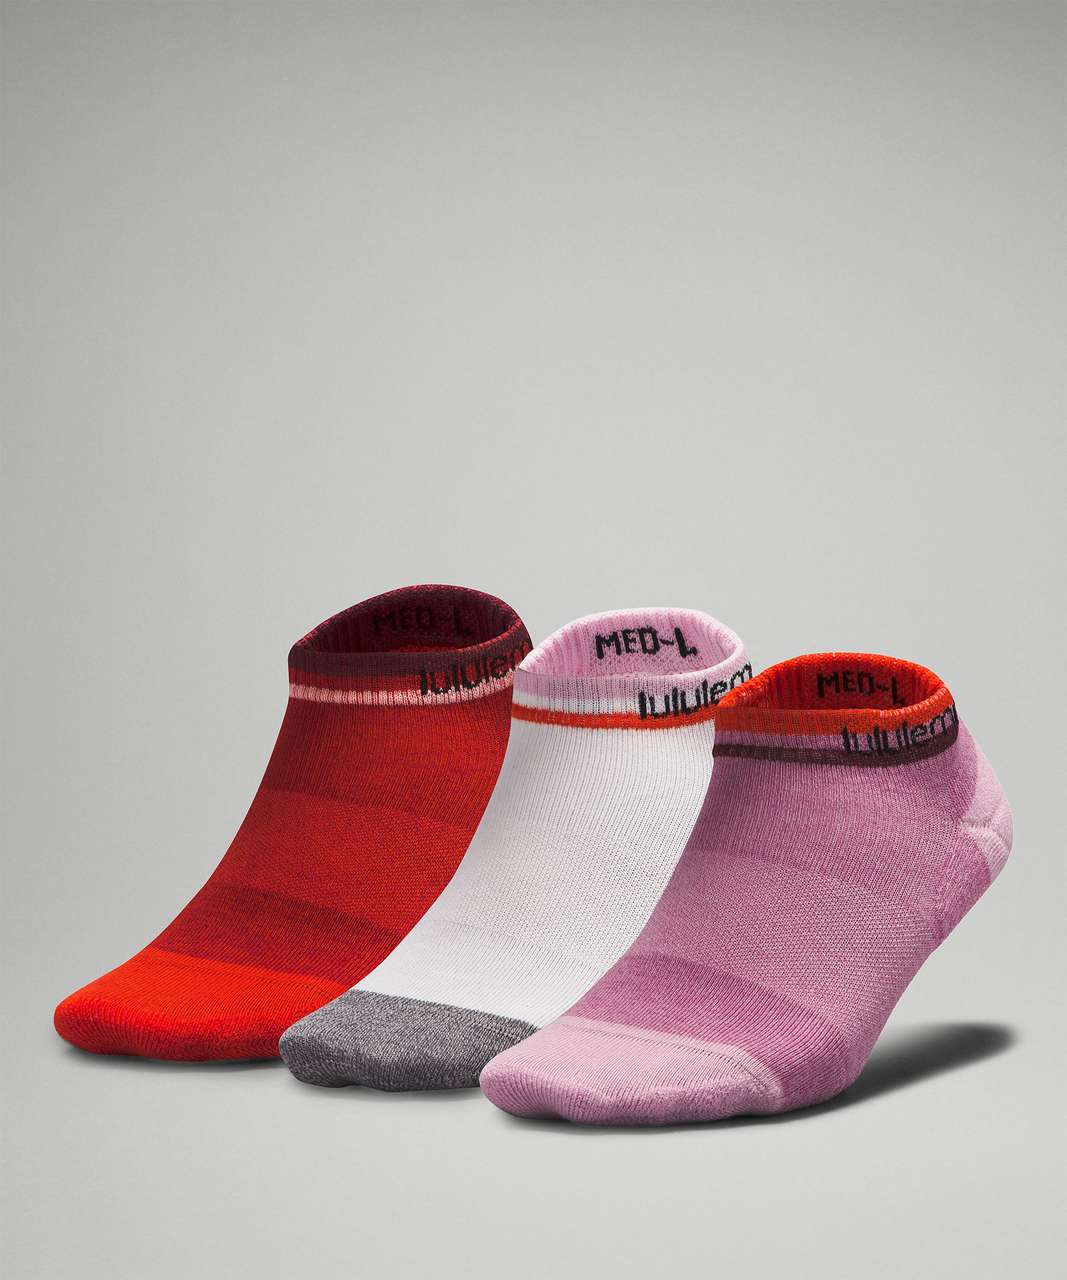 Lululemon Womens Daily Stride Comfort Ankle Sock *3 Pack - Velvet